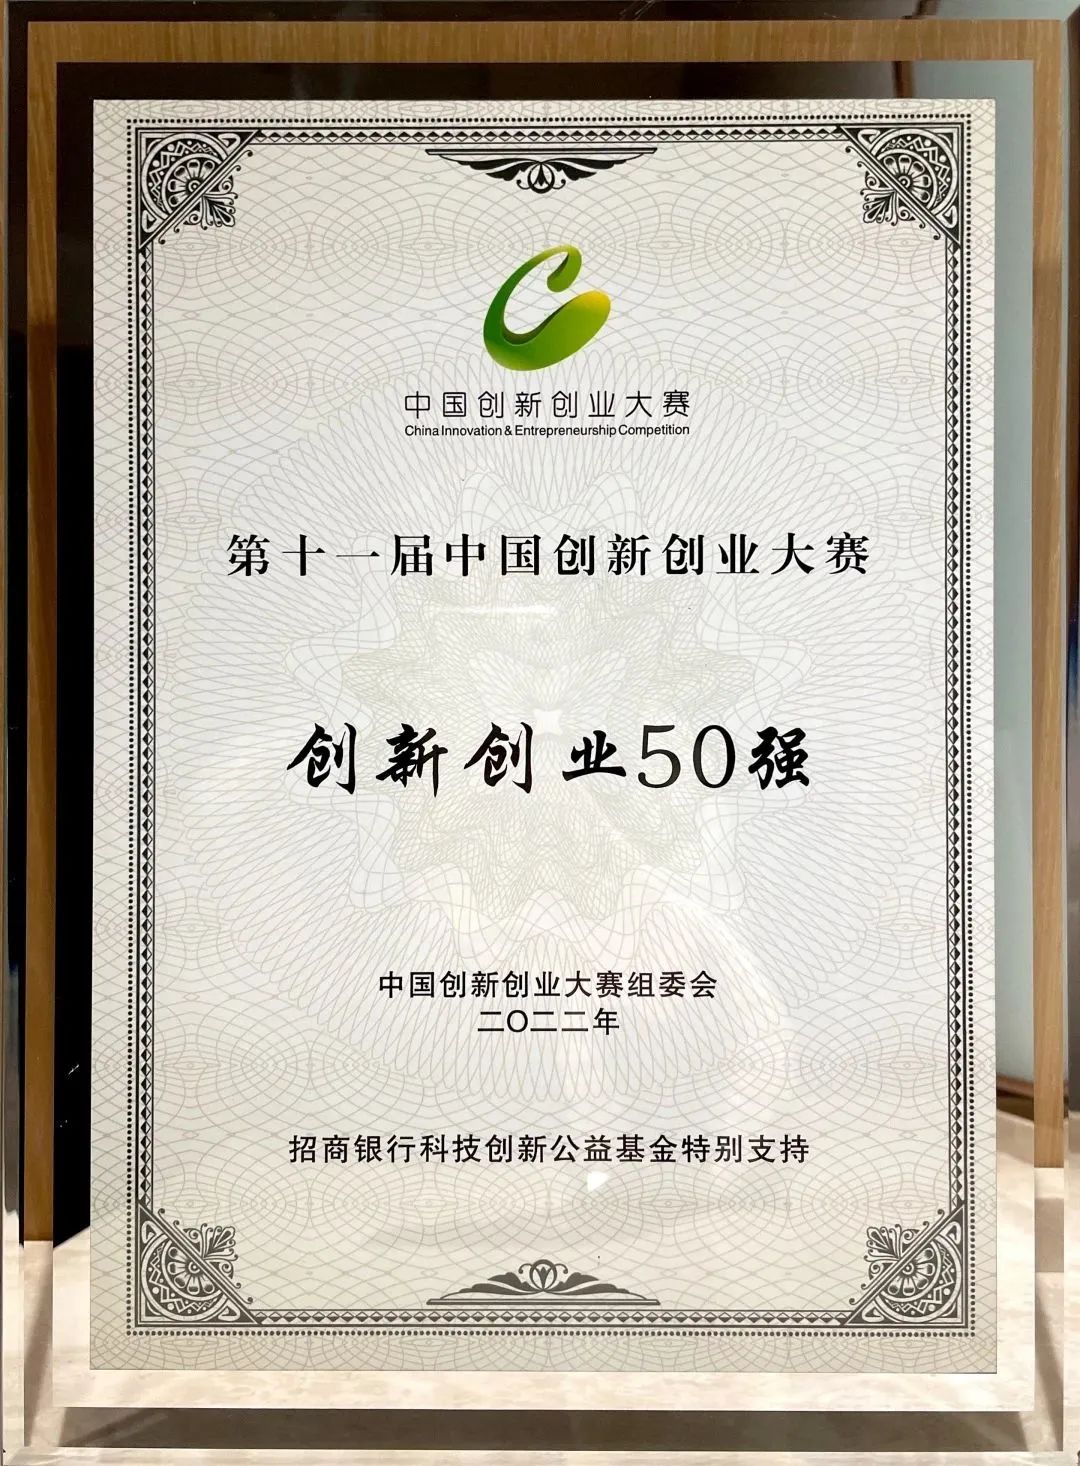 全国50强！比博斯特荣获第十一届中国创新创业大赛“创新创业50强”